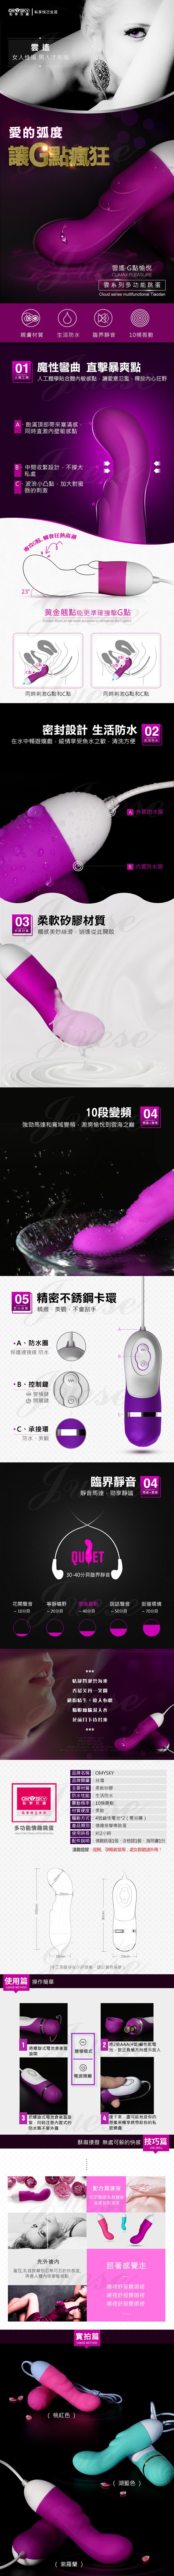 omysky-雲遙 10段變頻防水G點震動矽膠跳蛋-紫色